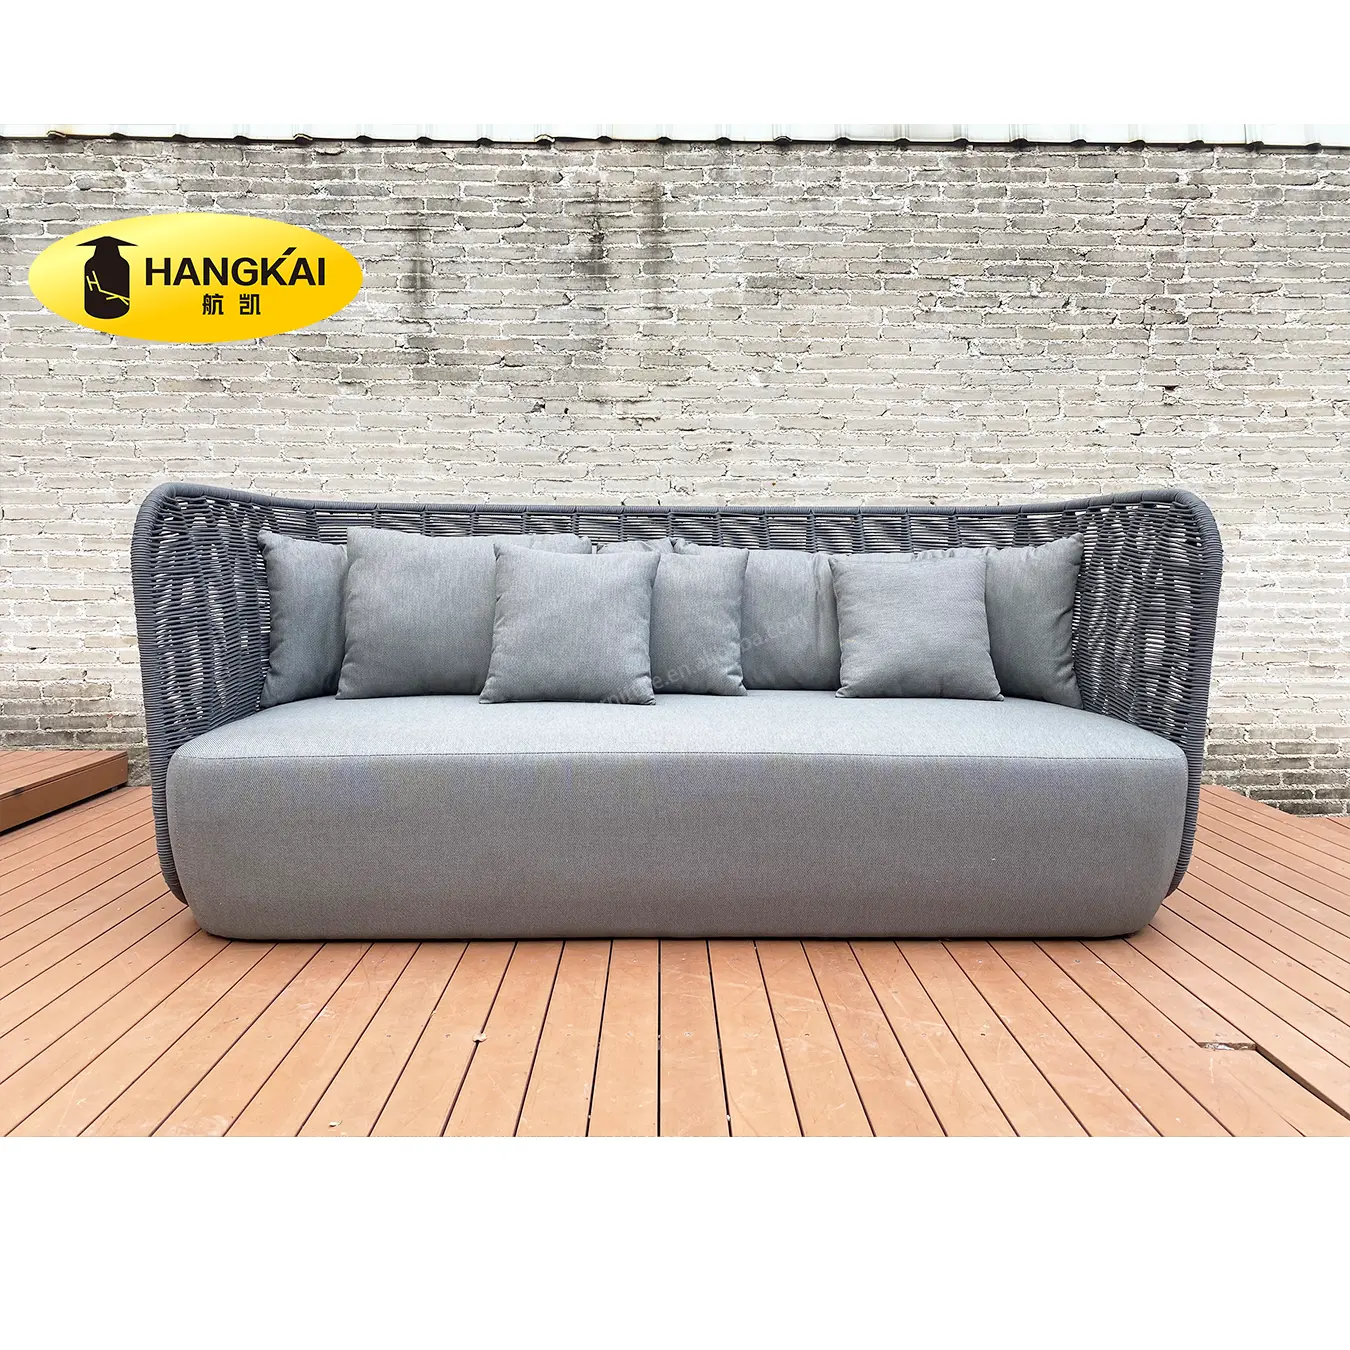 Ensemble de salon villa hôtel projet patio de luxe aluminium jardin corde meubles extérieur tissu sectionnel canapé